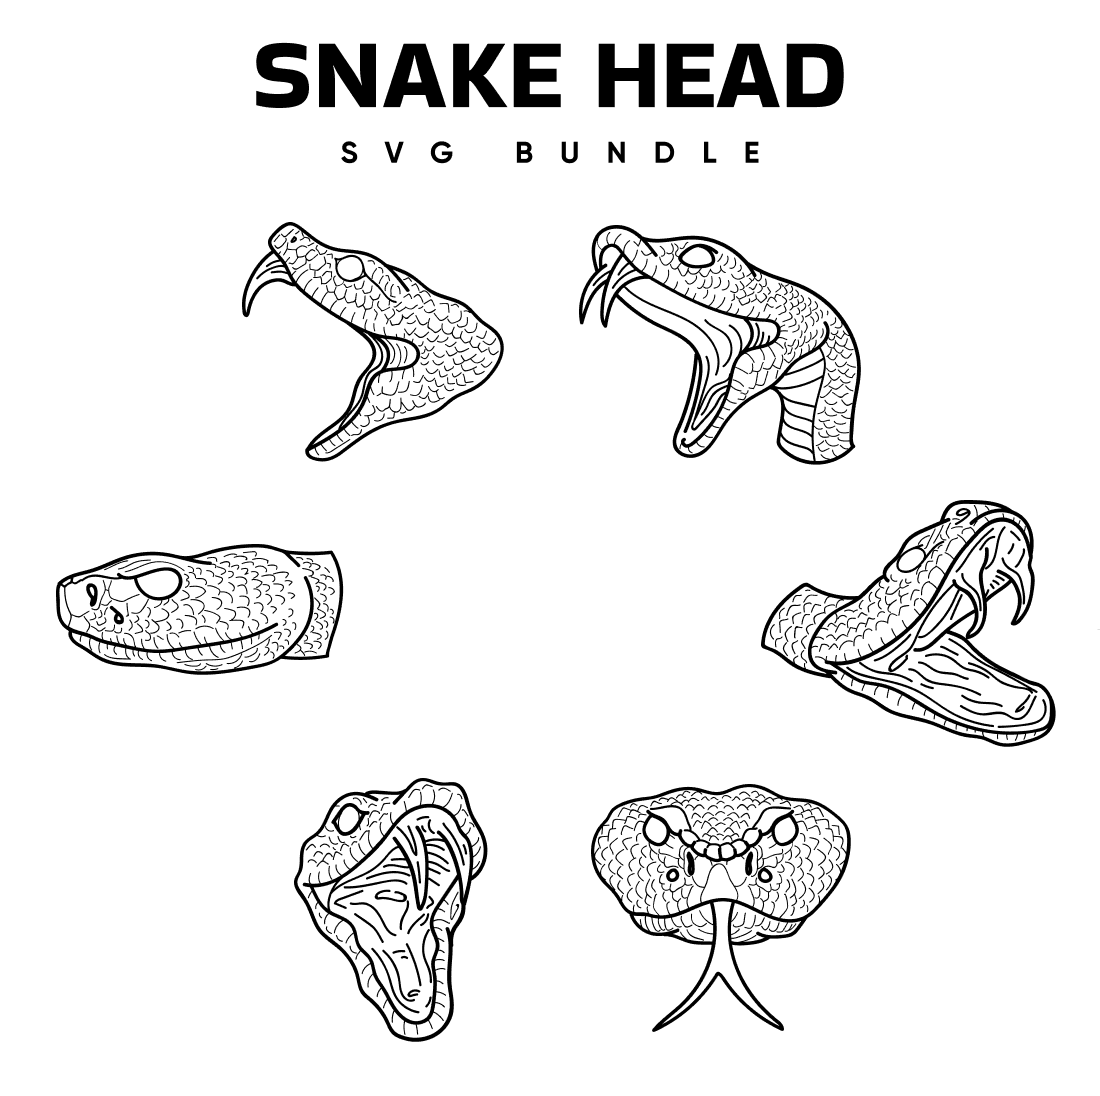 Snake head svg bundle.